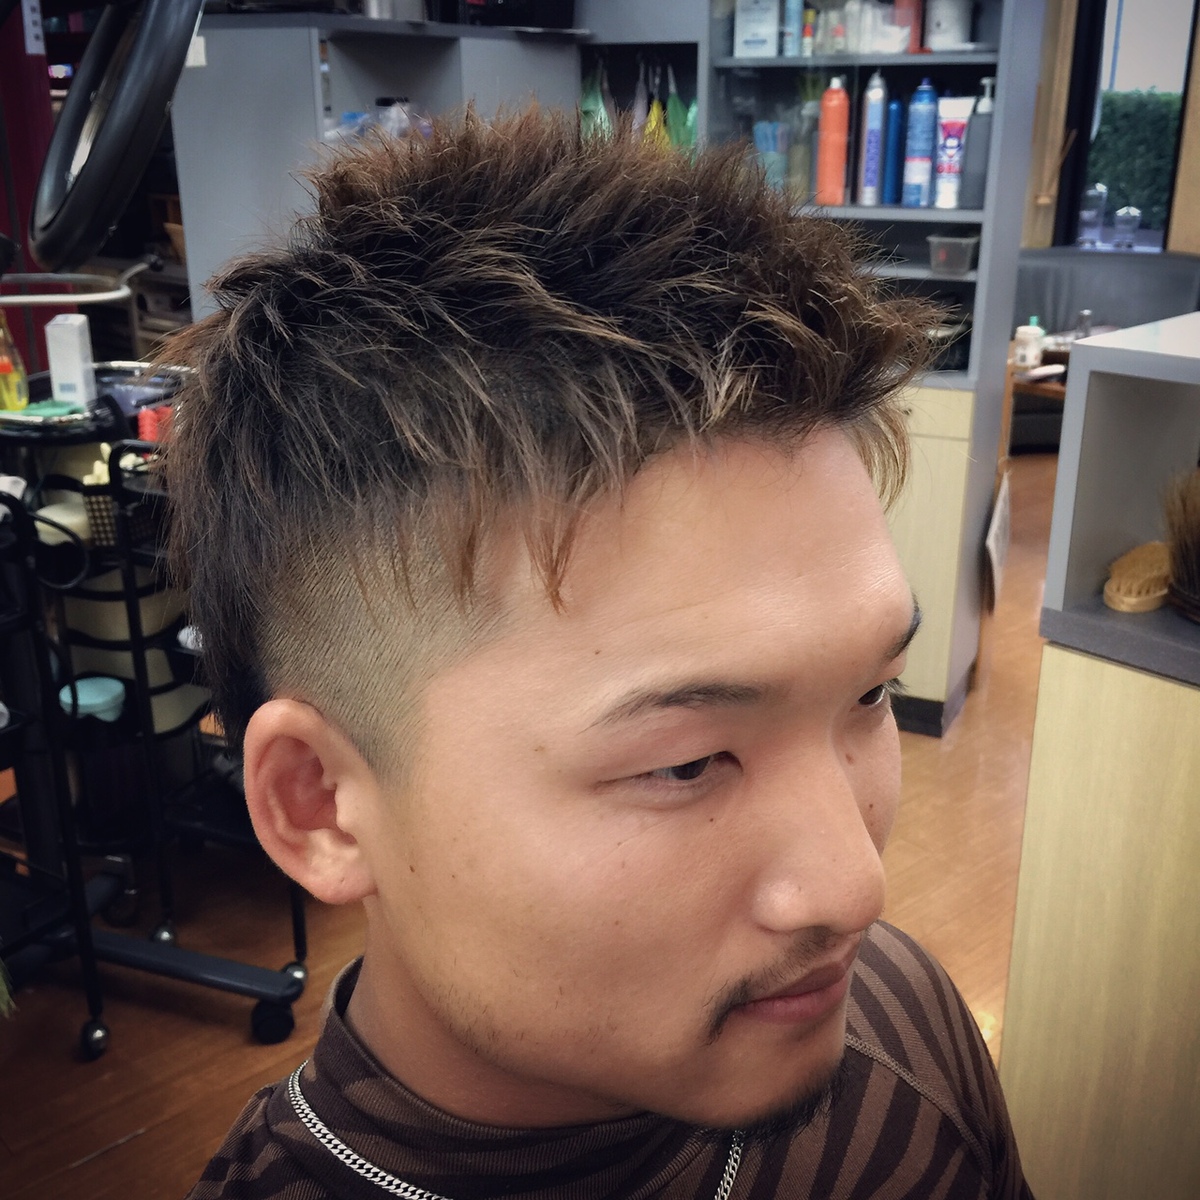 ソフトモヒカン ツーブロック | メンズの髪の悩みを解決! 瑞穂町の BarberShop (バーバーショップ・理容室) カットスペースシオザワ